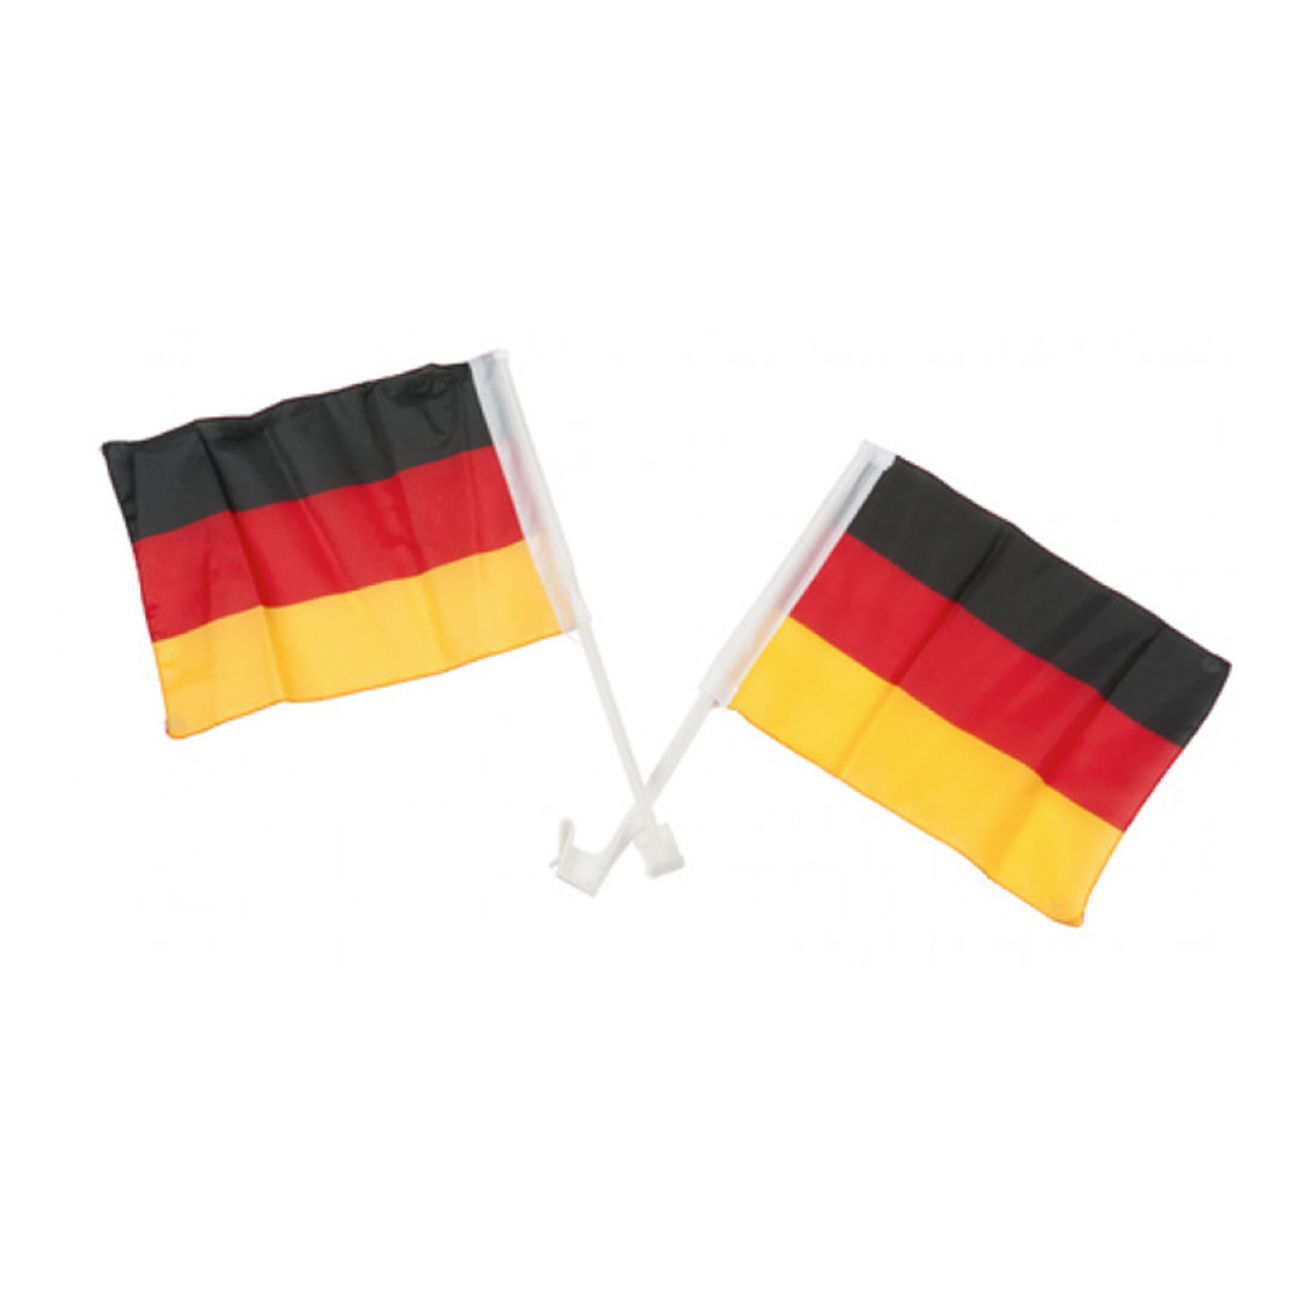 bilflaggor-tyskland-1